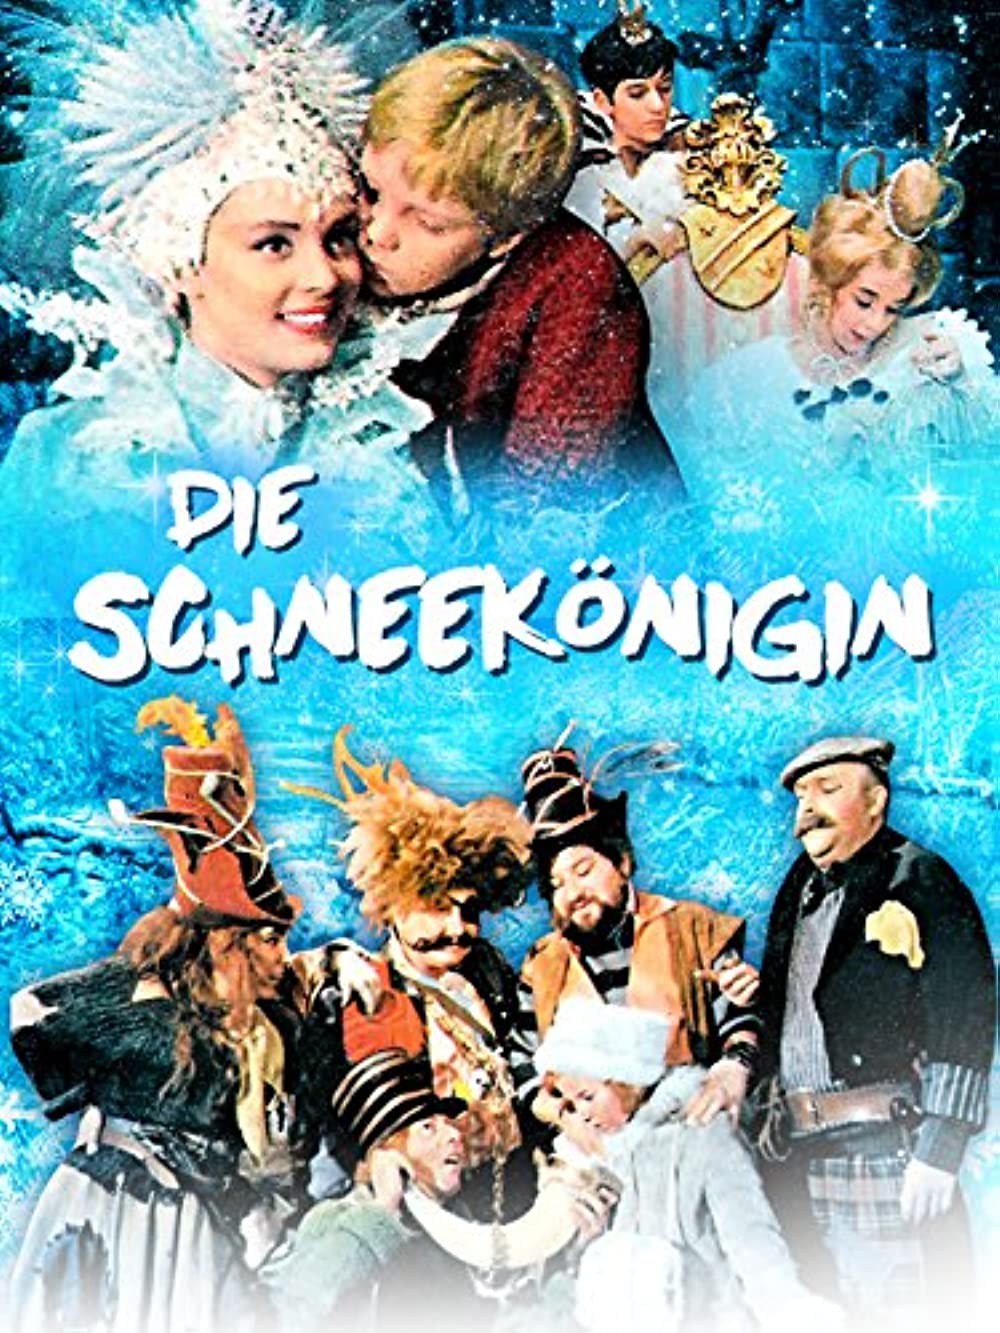 Filmbeschreibung zu Die Schneekönigin (1986)